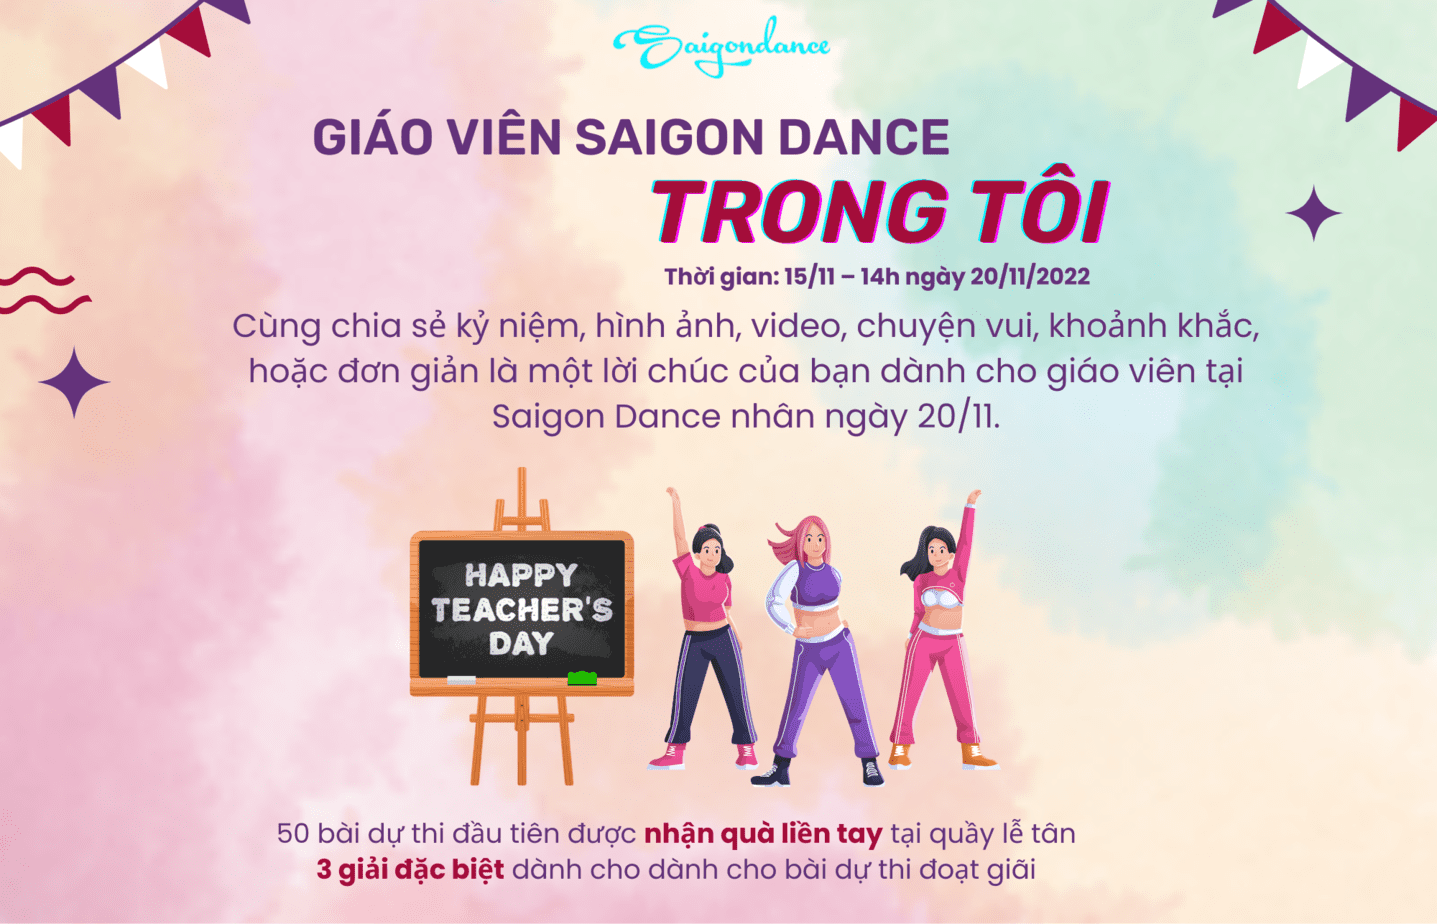 Nhận quà liền tay cùng Cuộc thi "Giáo viên Saigon Dance trong tôi" 5